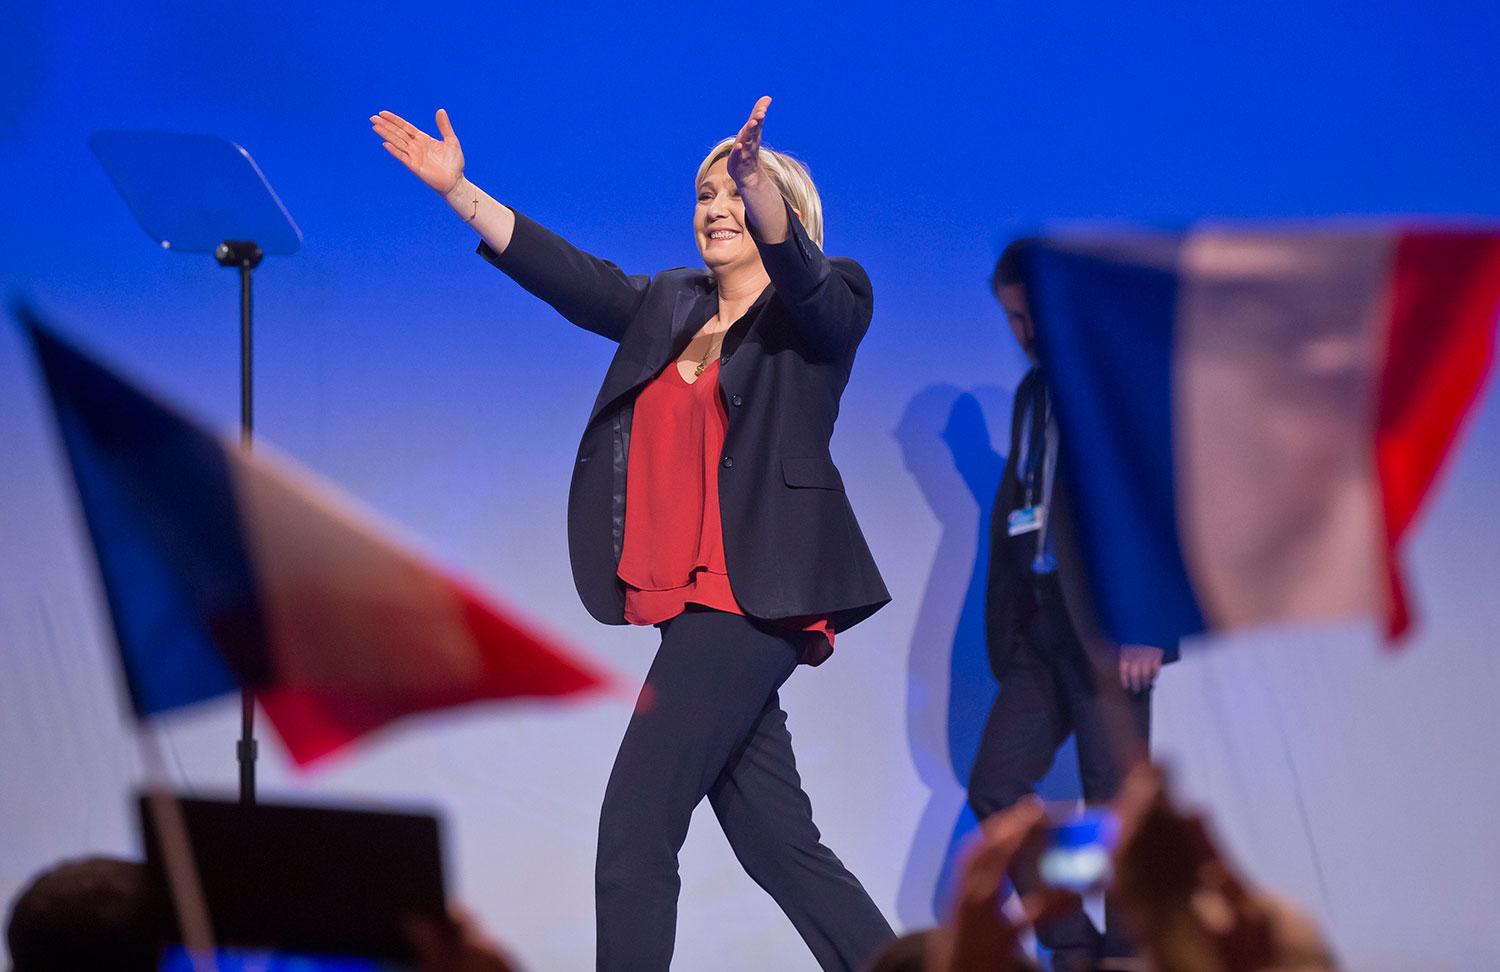 I arbetslöshetens norra Frankrike ser många Marine Le Pen som en efterlängtad frälsare.